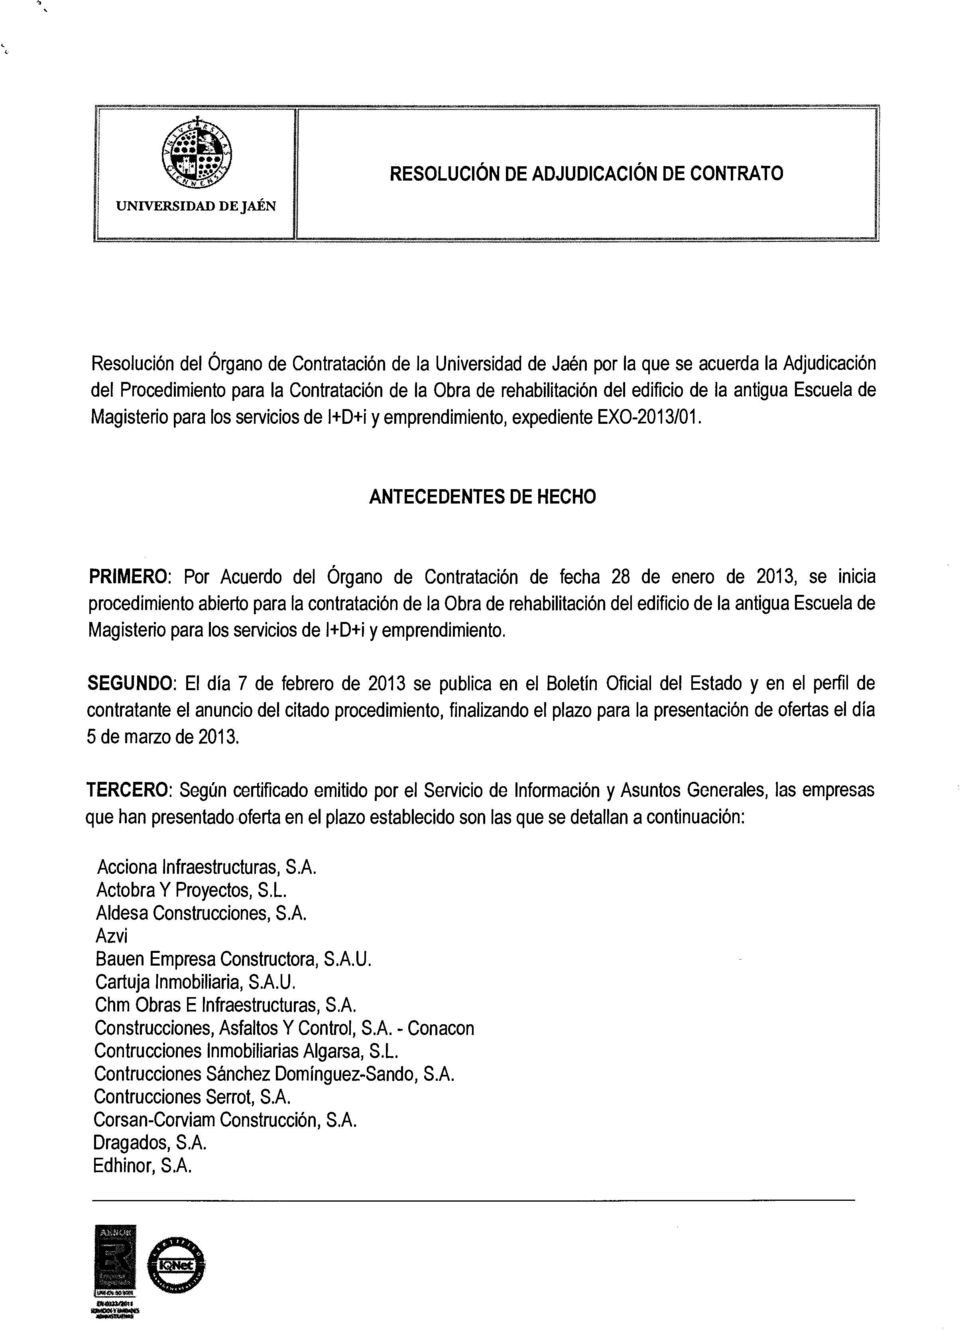 ANTECEDENTES DE HECHO PRIMERO: Por Acuerdo del Órgano de Contratación de fecha 28 de enero de 2013, se inicia procedimiento abierto para la contratación de la Obra de rehabilitación del edificio de